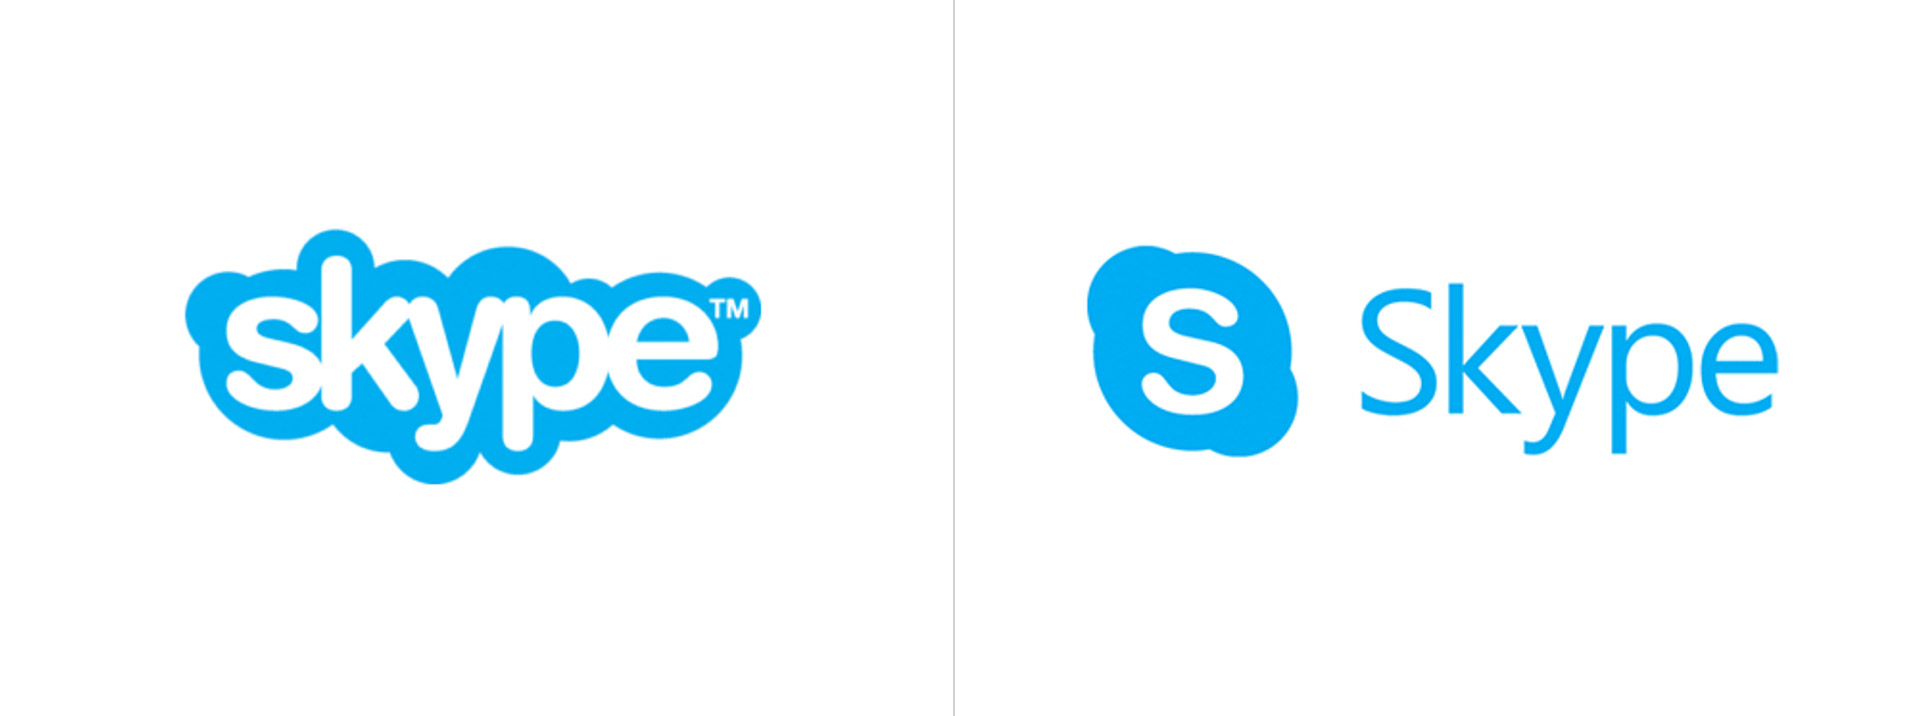 Skype đổi logo, không còn biểu tượng đám mây